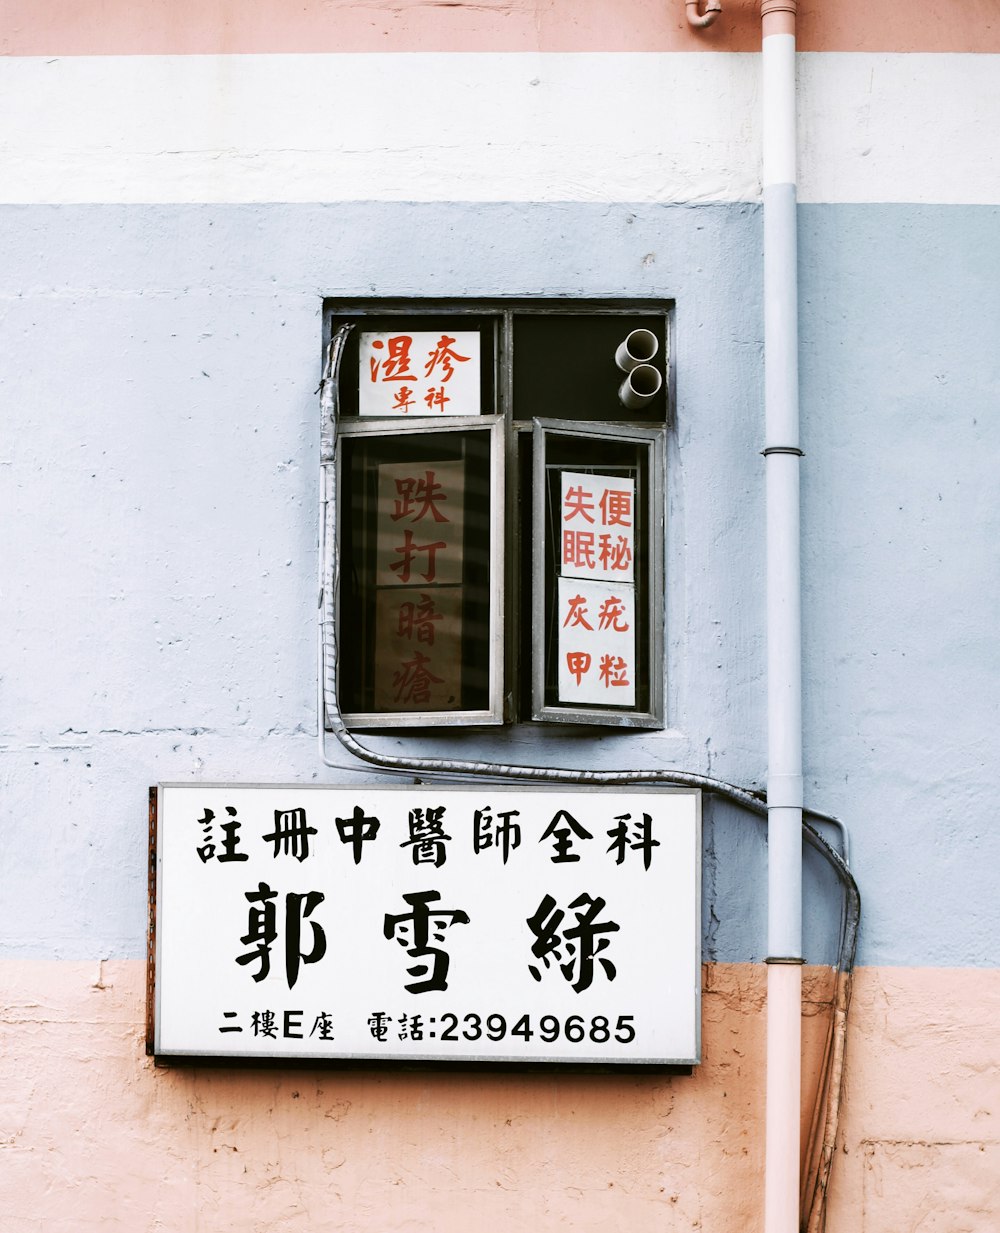 漢字サイネージのストリート写真